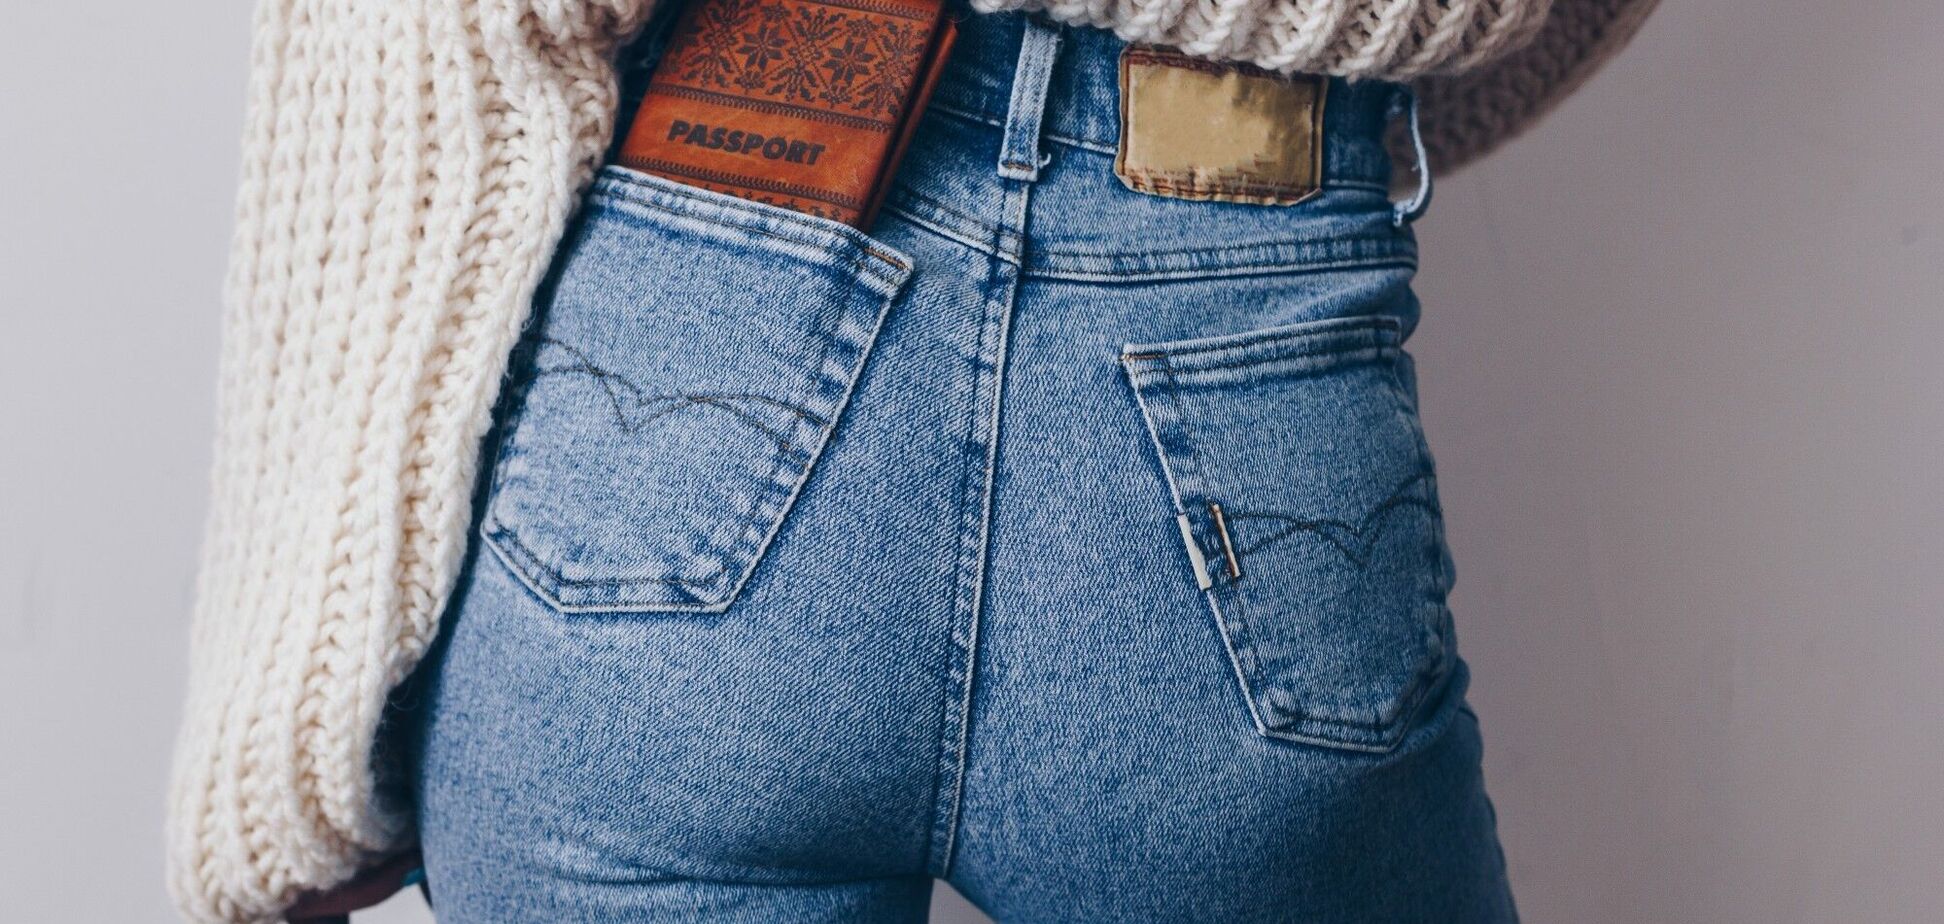 Названо моделі джинсів, які чоловіки вважають найсексуальнішими